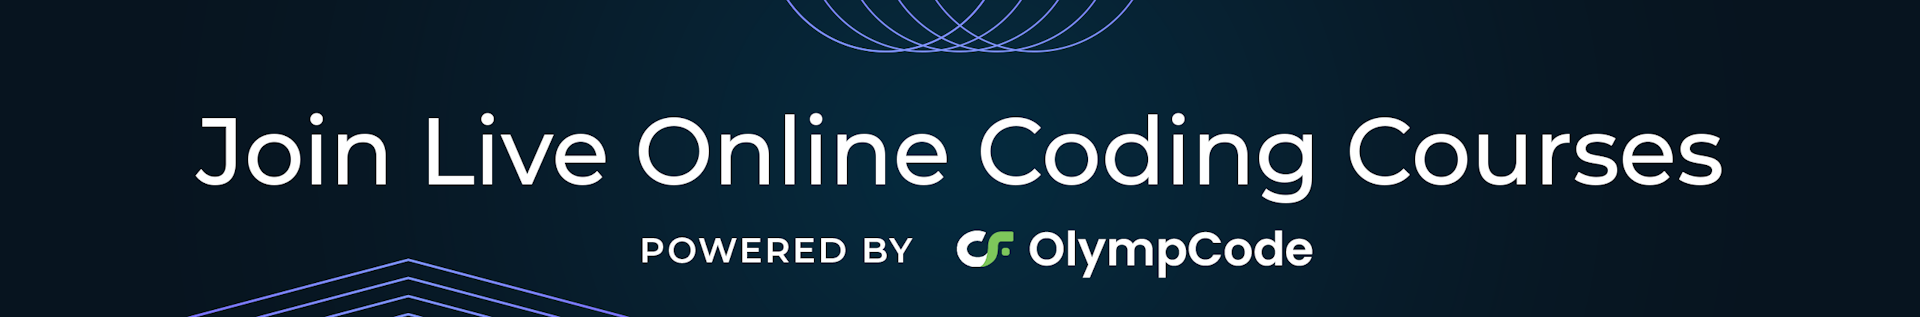 OlympCode